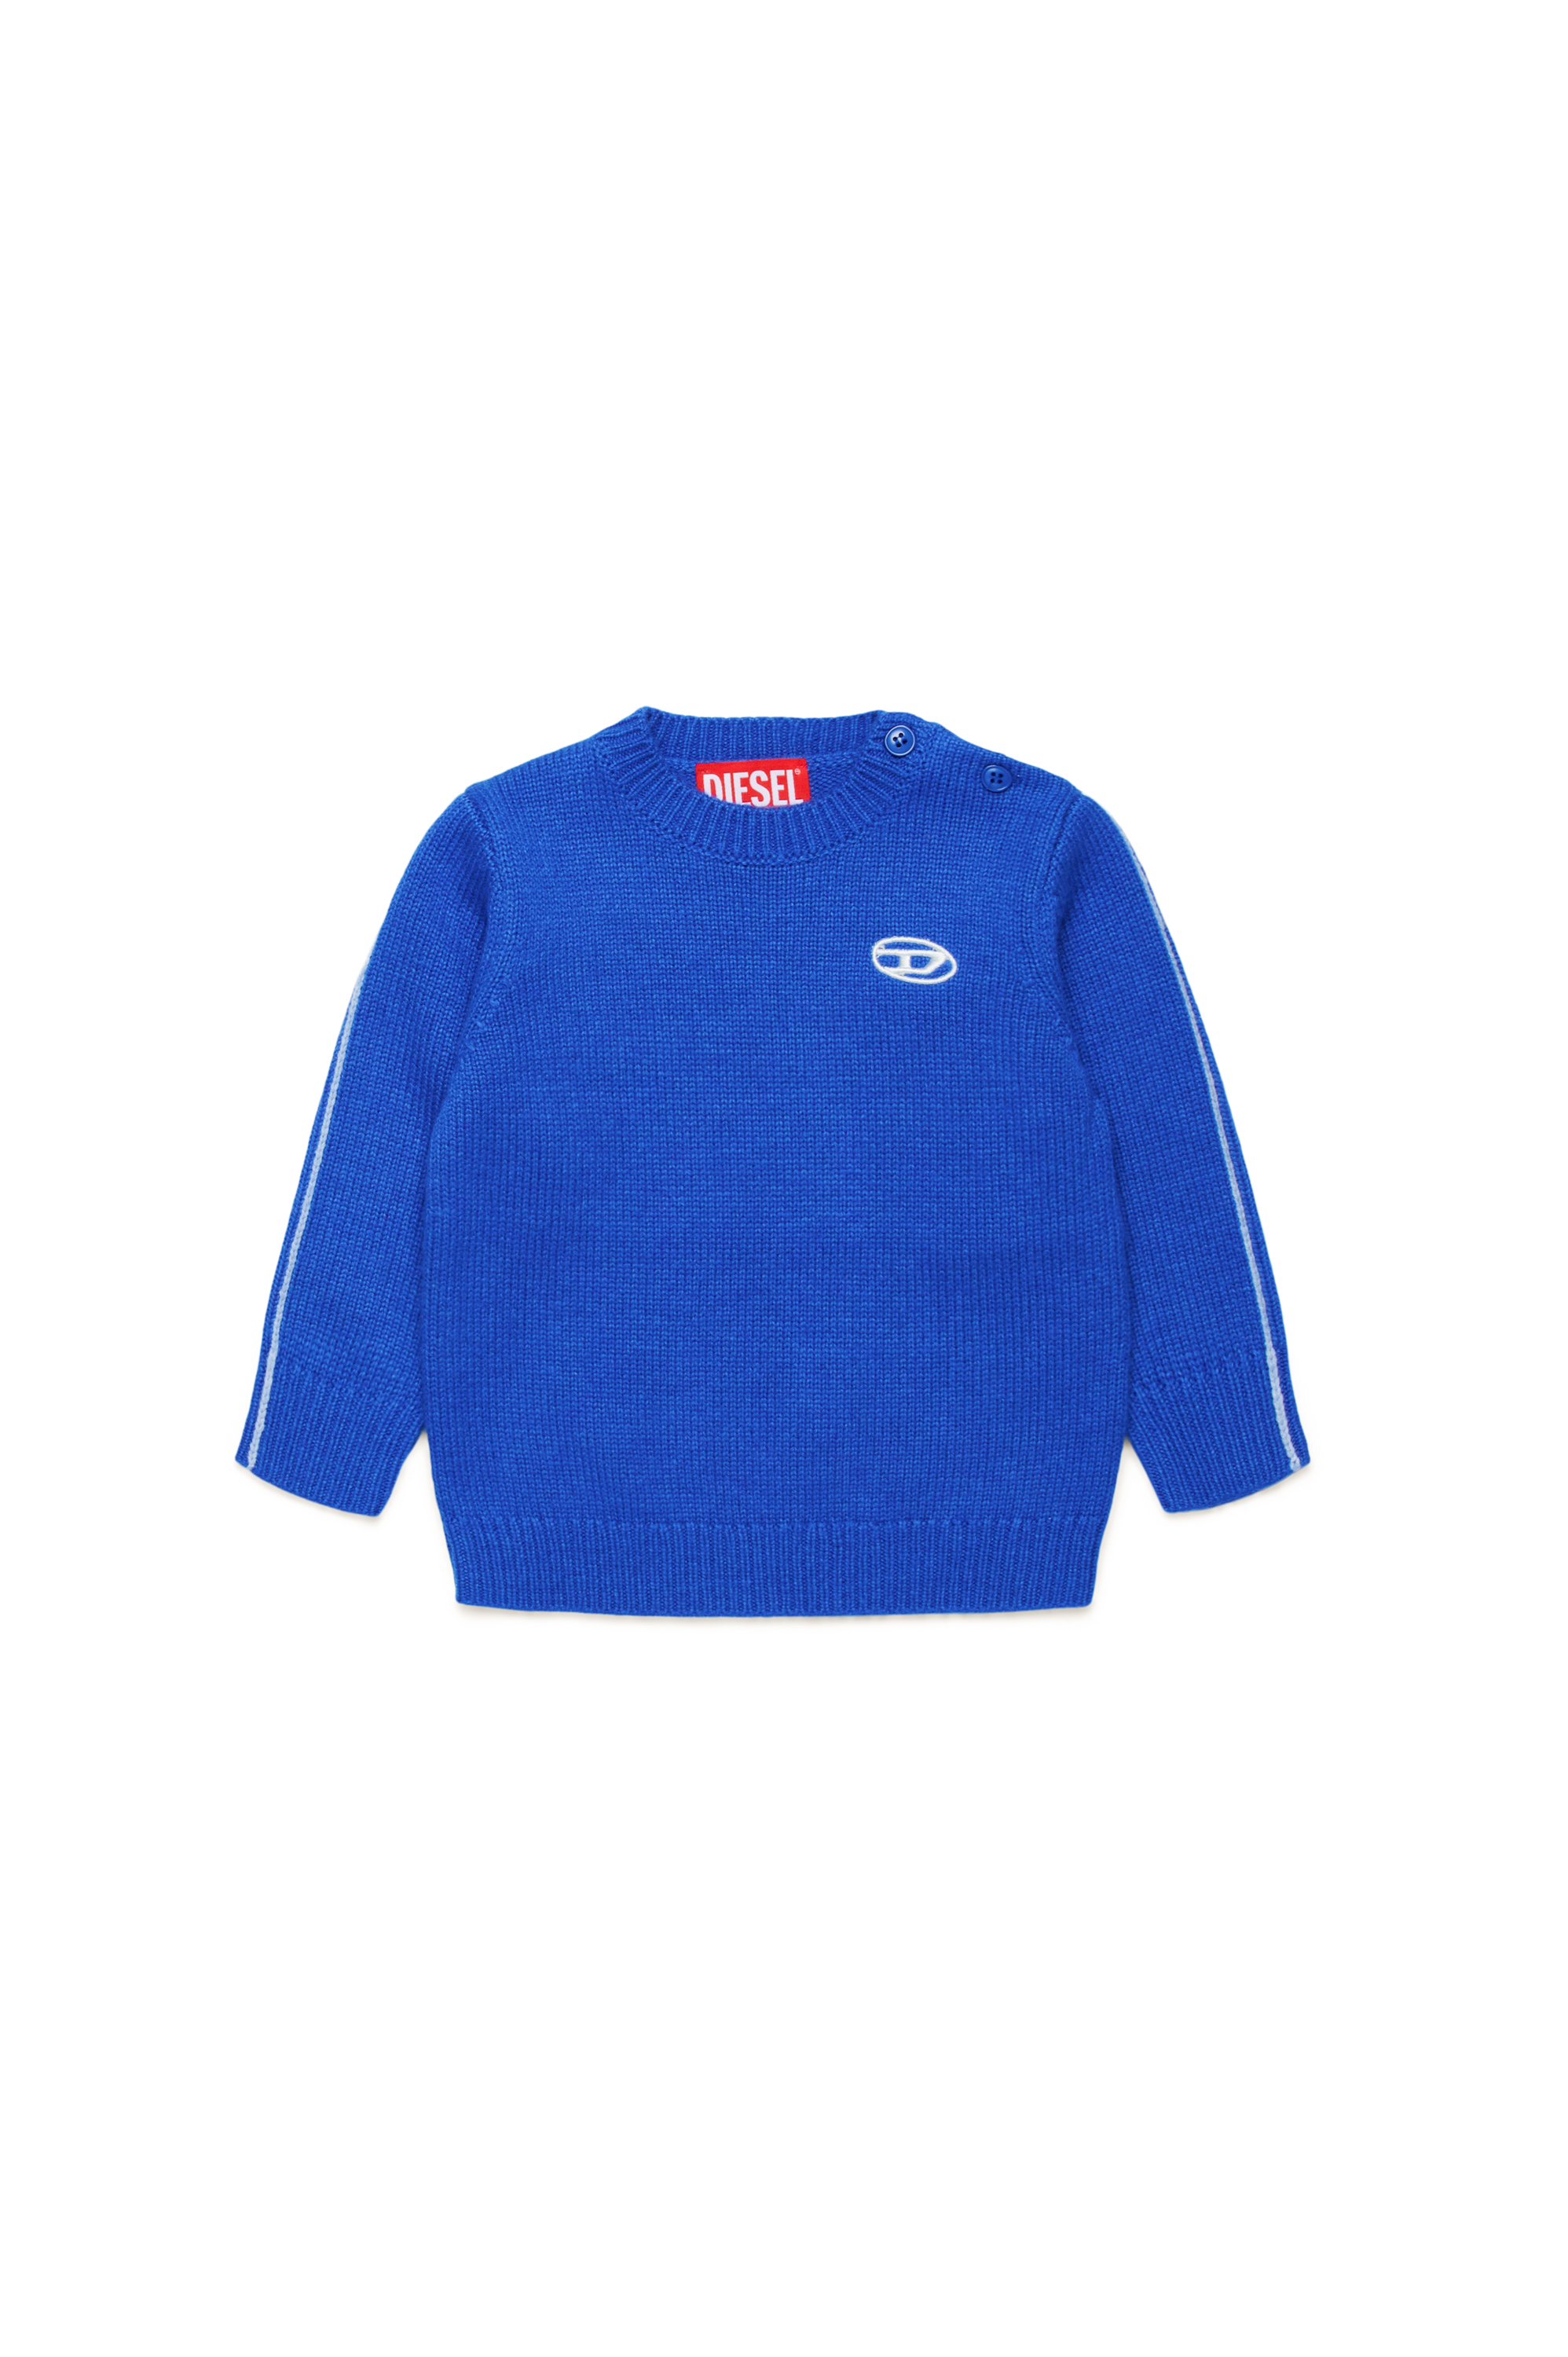 Diesel - KJOSIB, Unisex Piped jumper in cashmere-enriched blend in Blue - Image 1